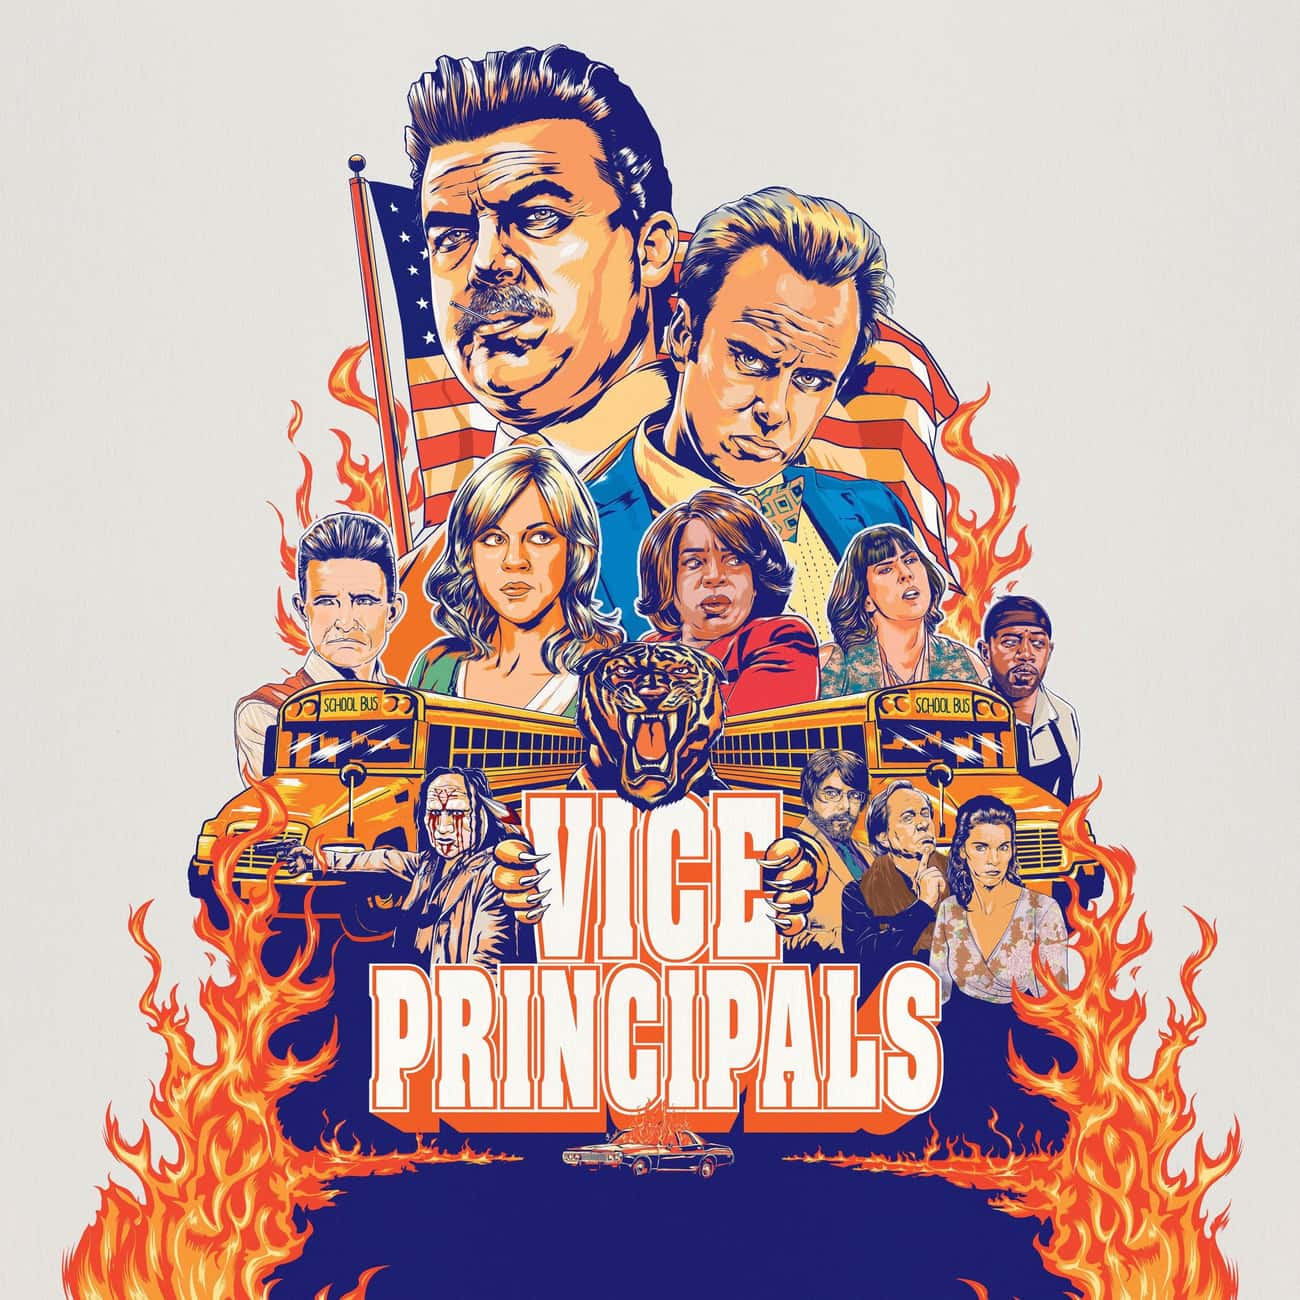 Vice Principals